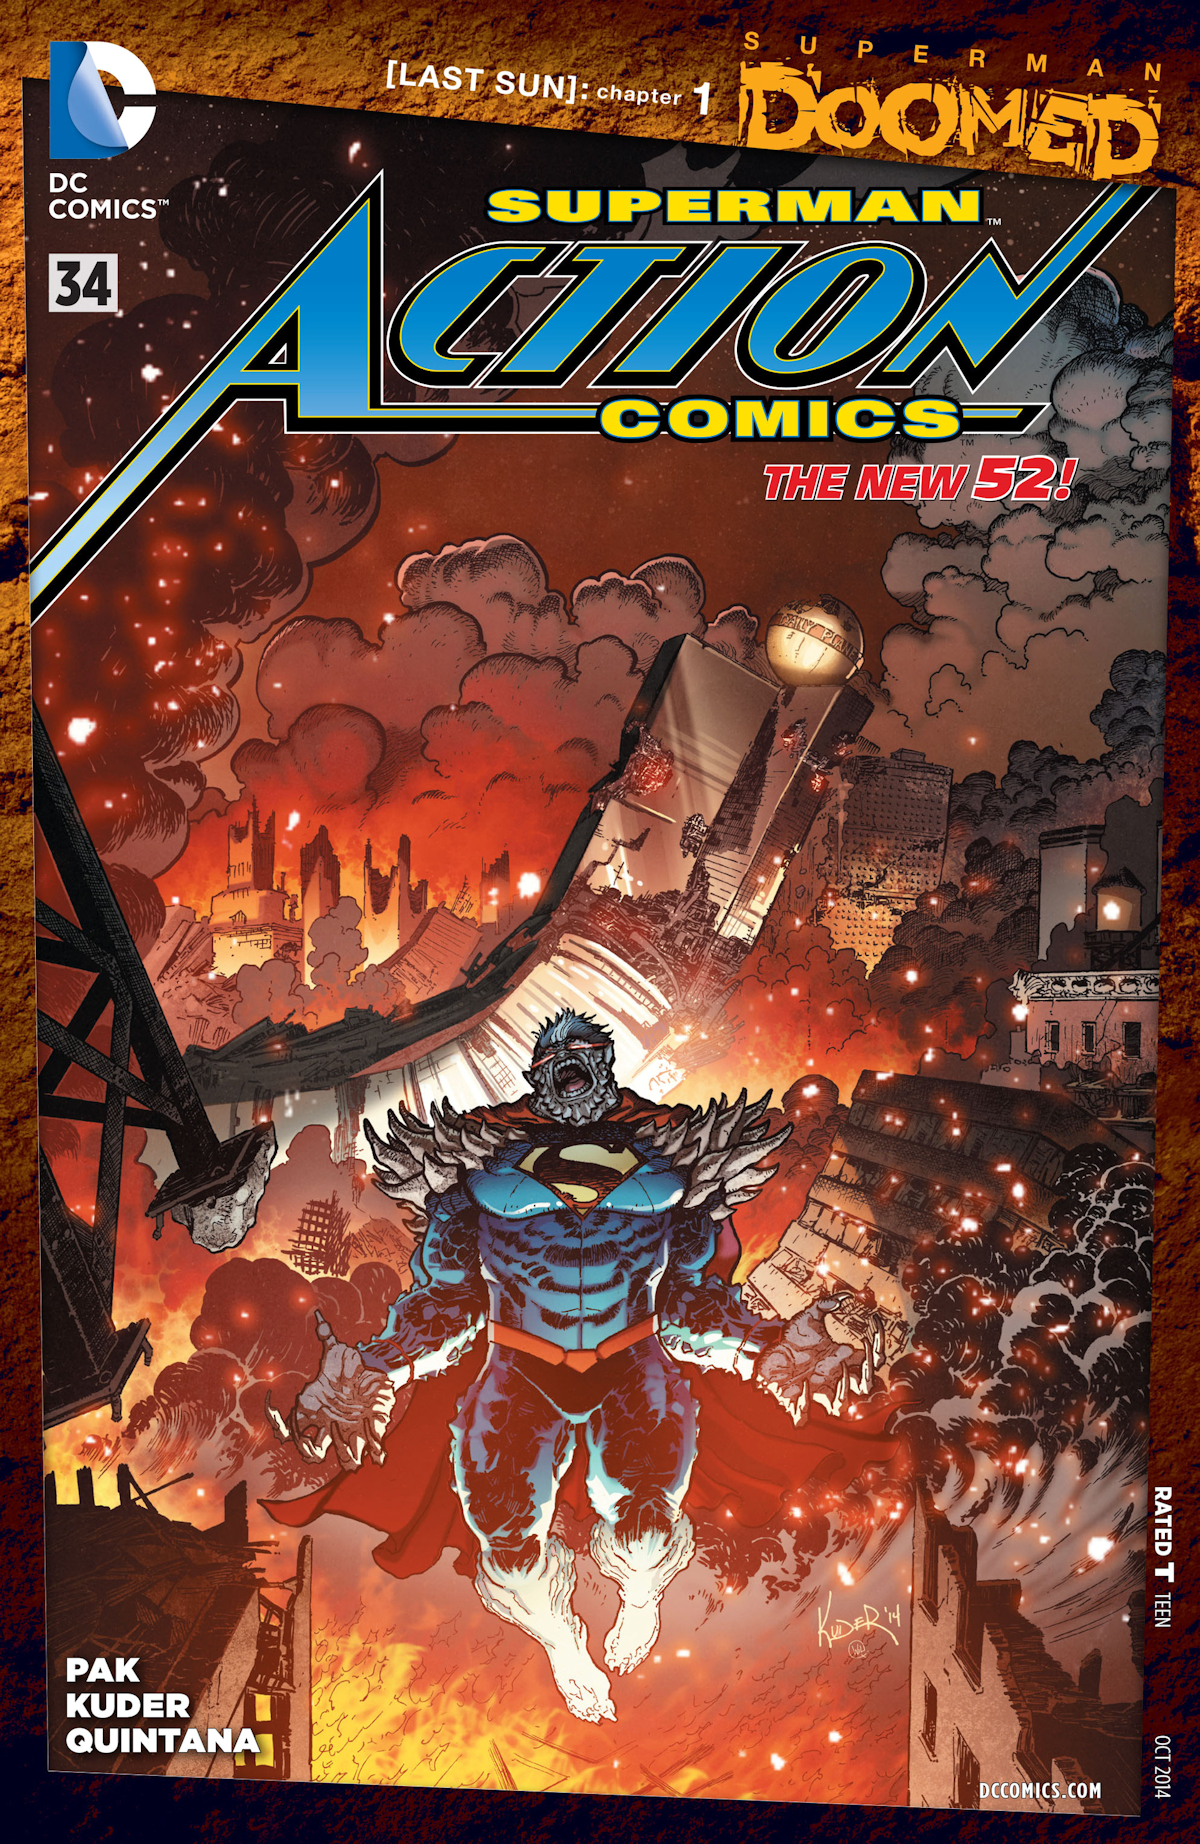 Action Comics Vol. 2 34 (Cover A)